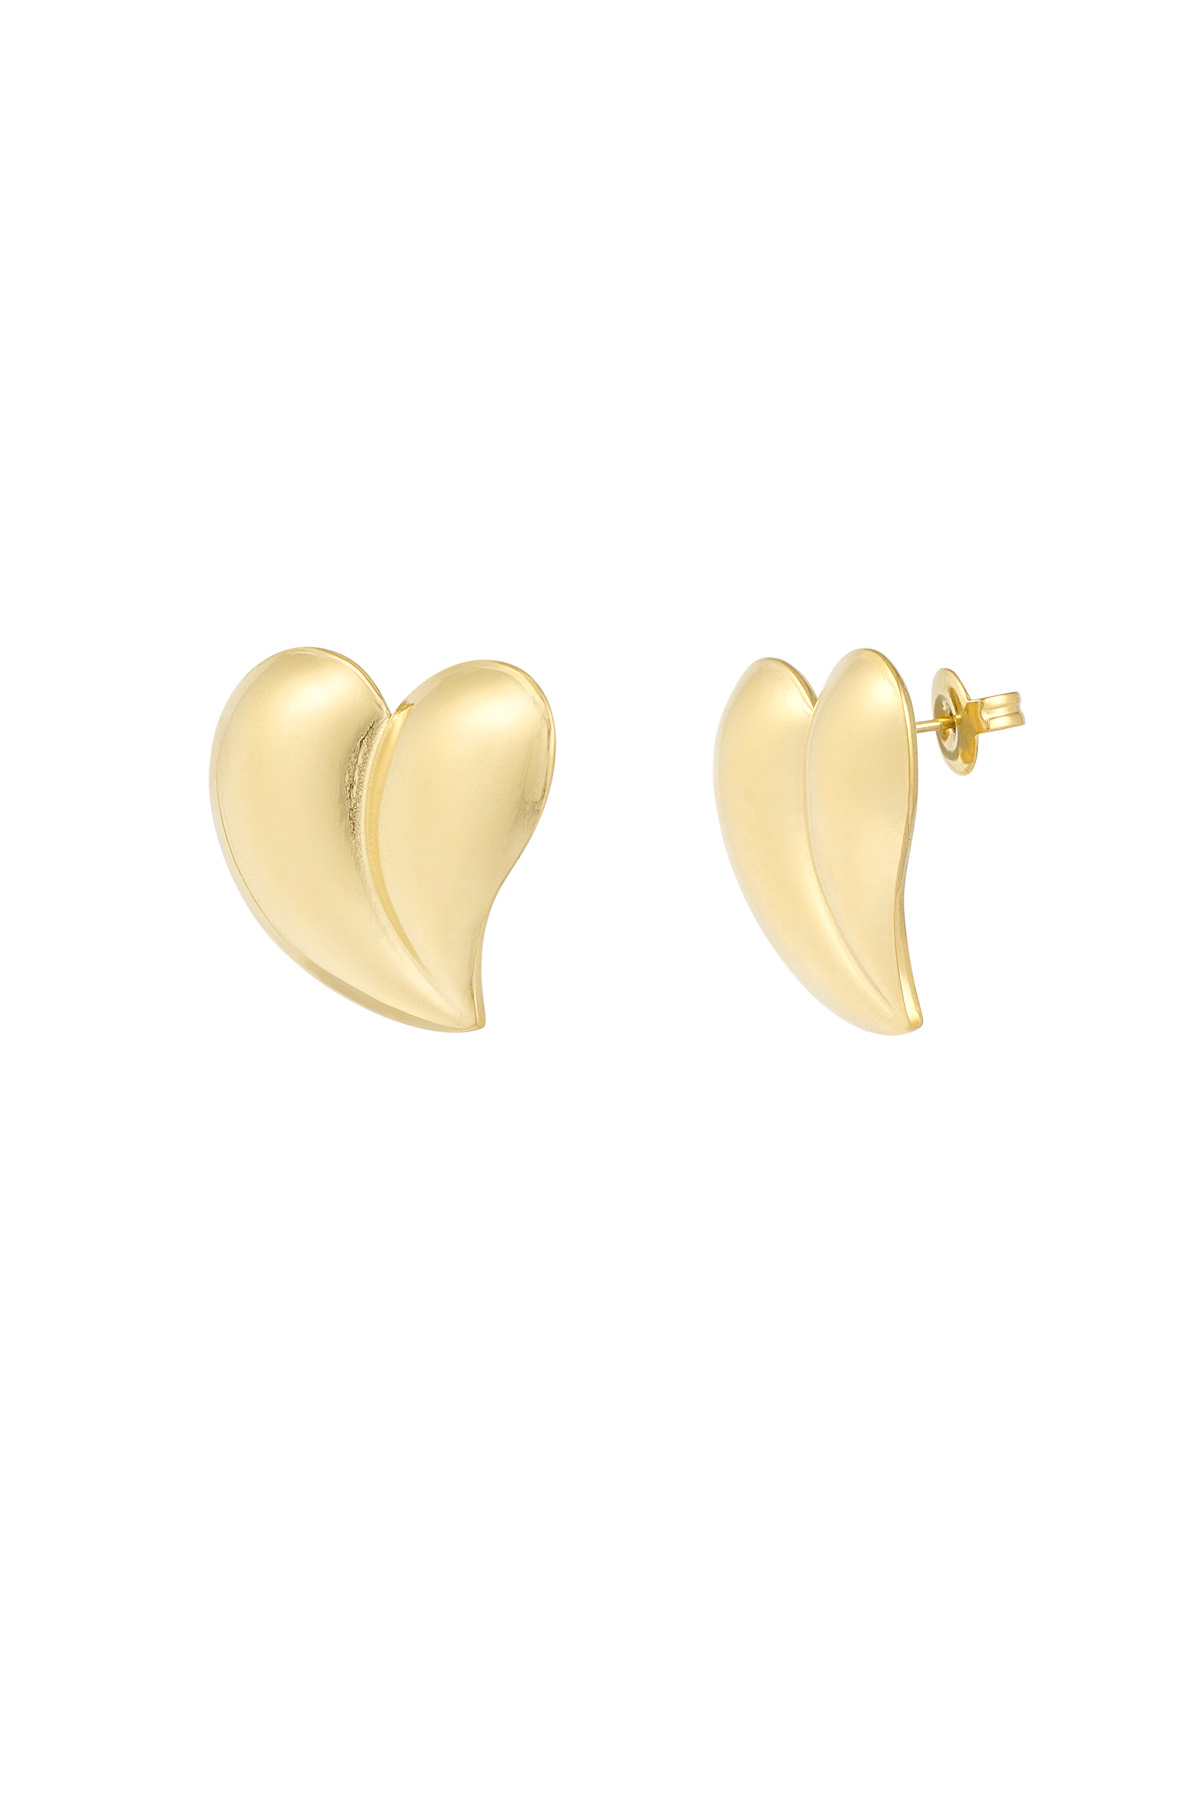 Earrings chrome heart - gold